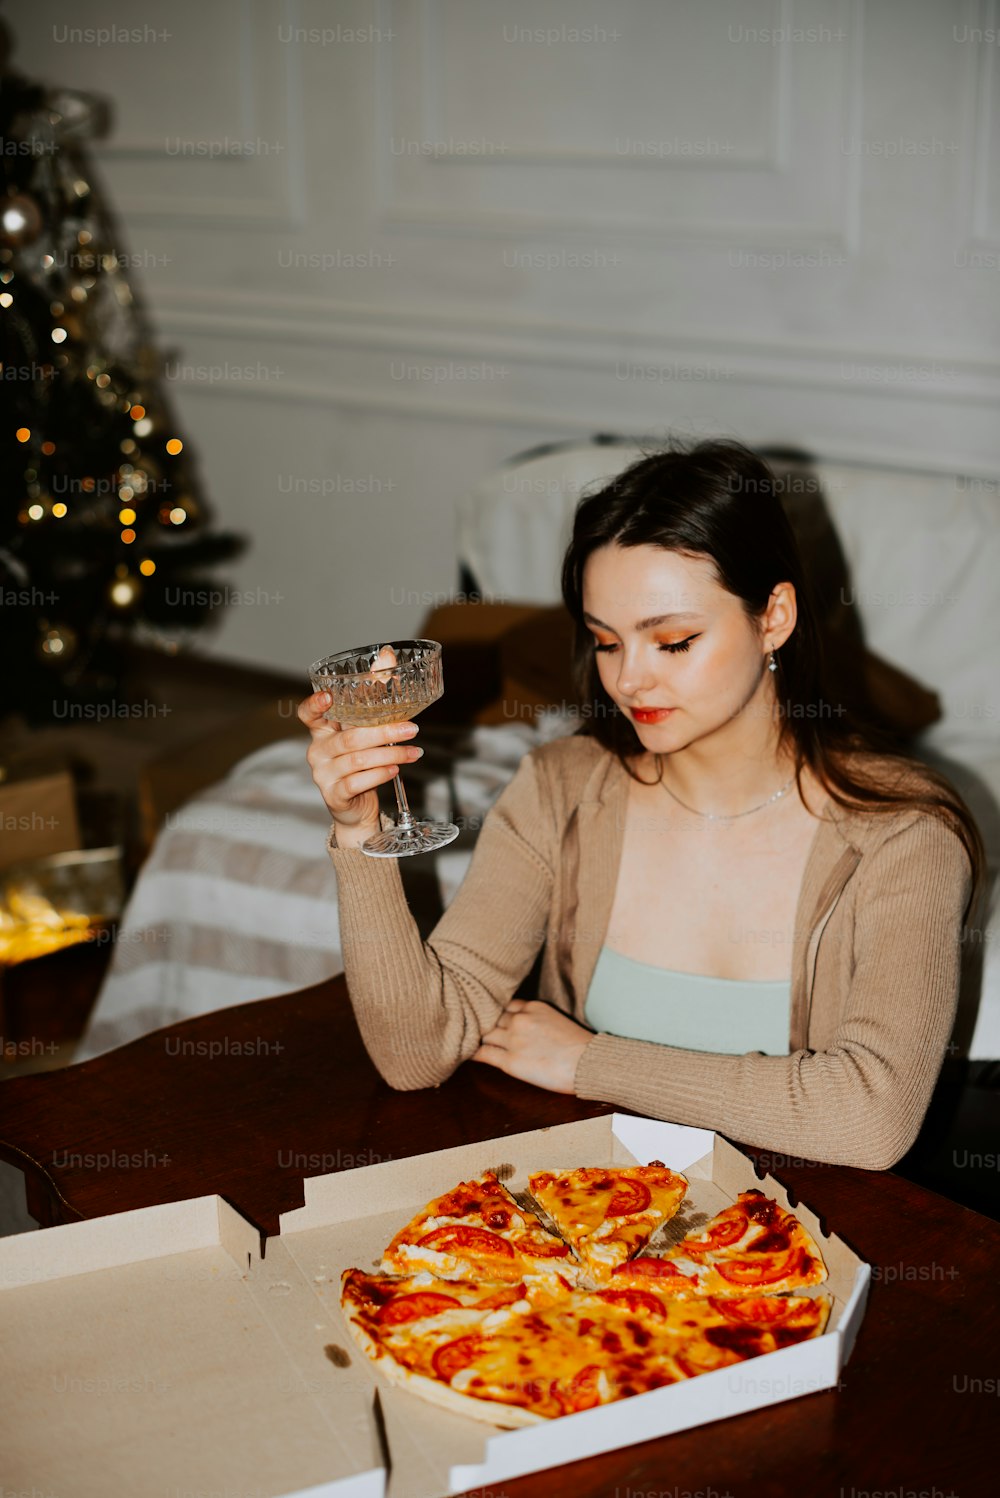 피자를 앞에 두고 테이블에 앉아 있는 여자